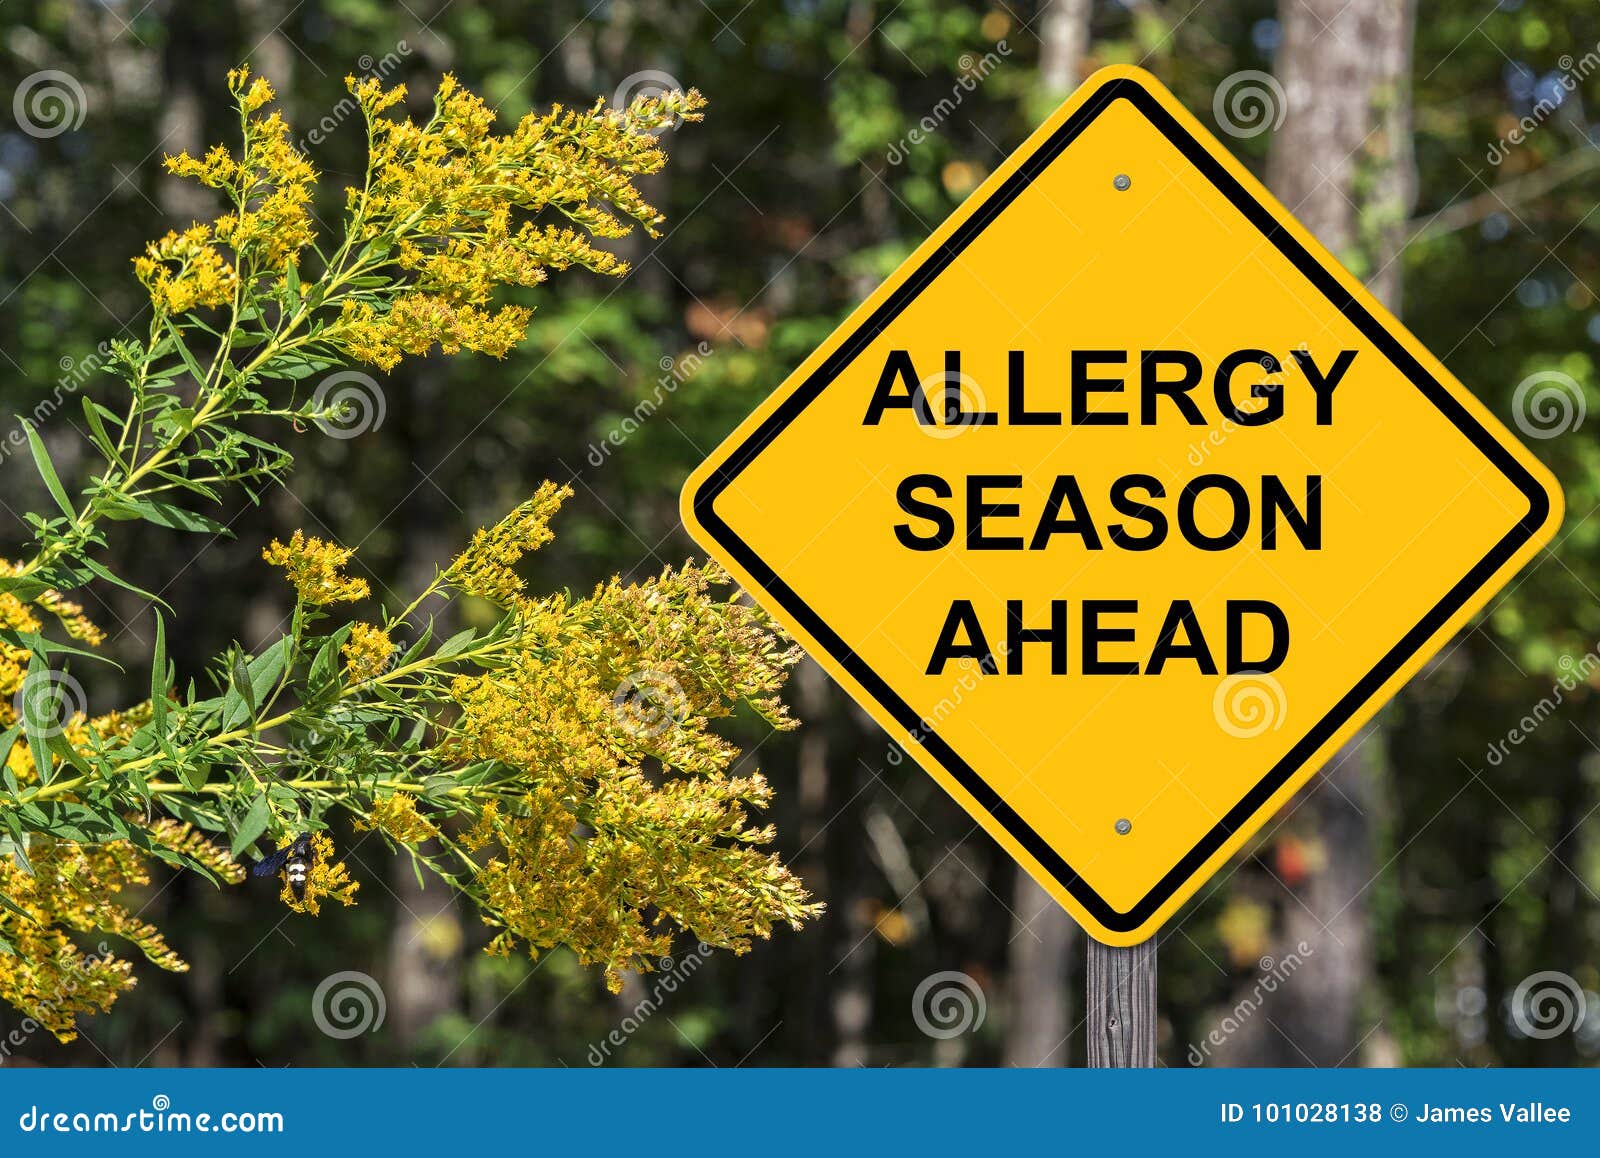 caution - allergy season ahead